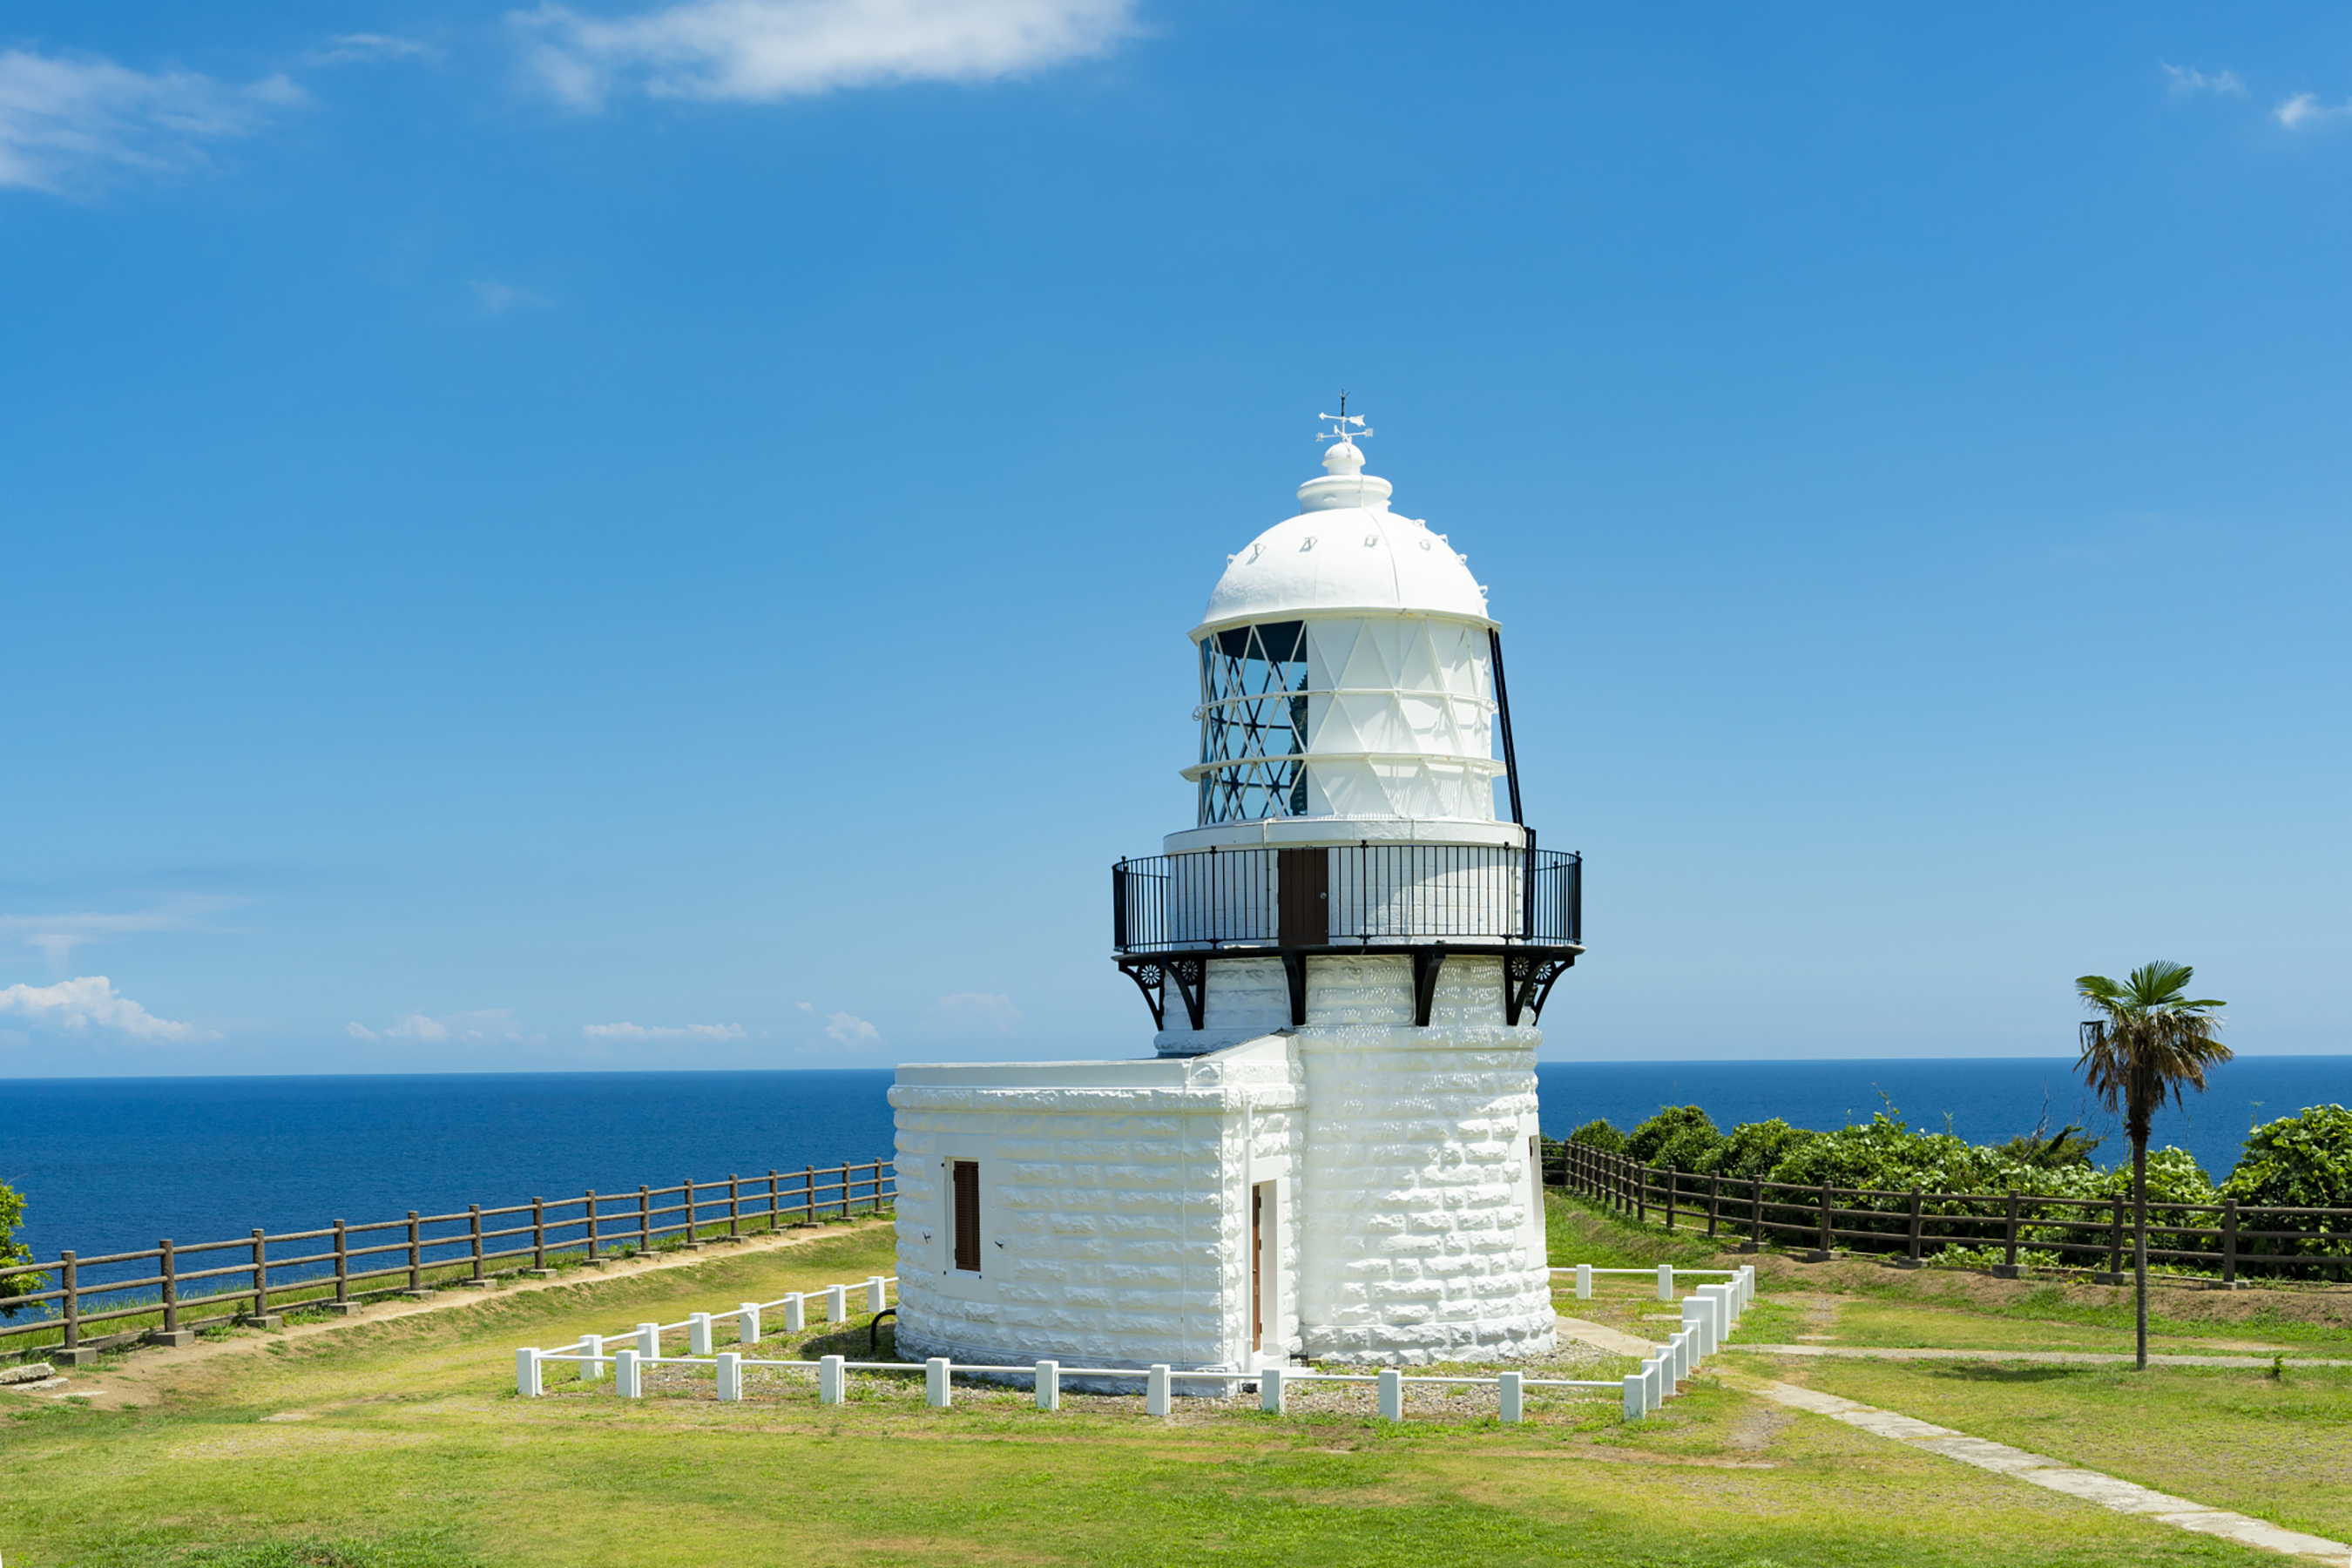 Rokkosaki Lighthouse